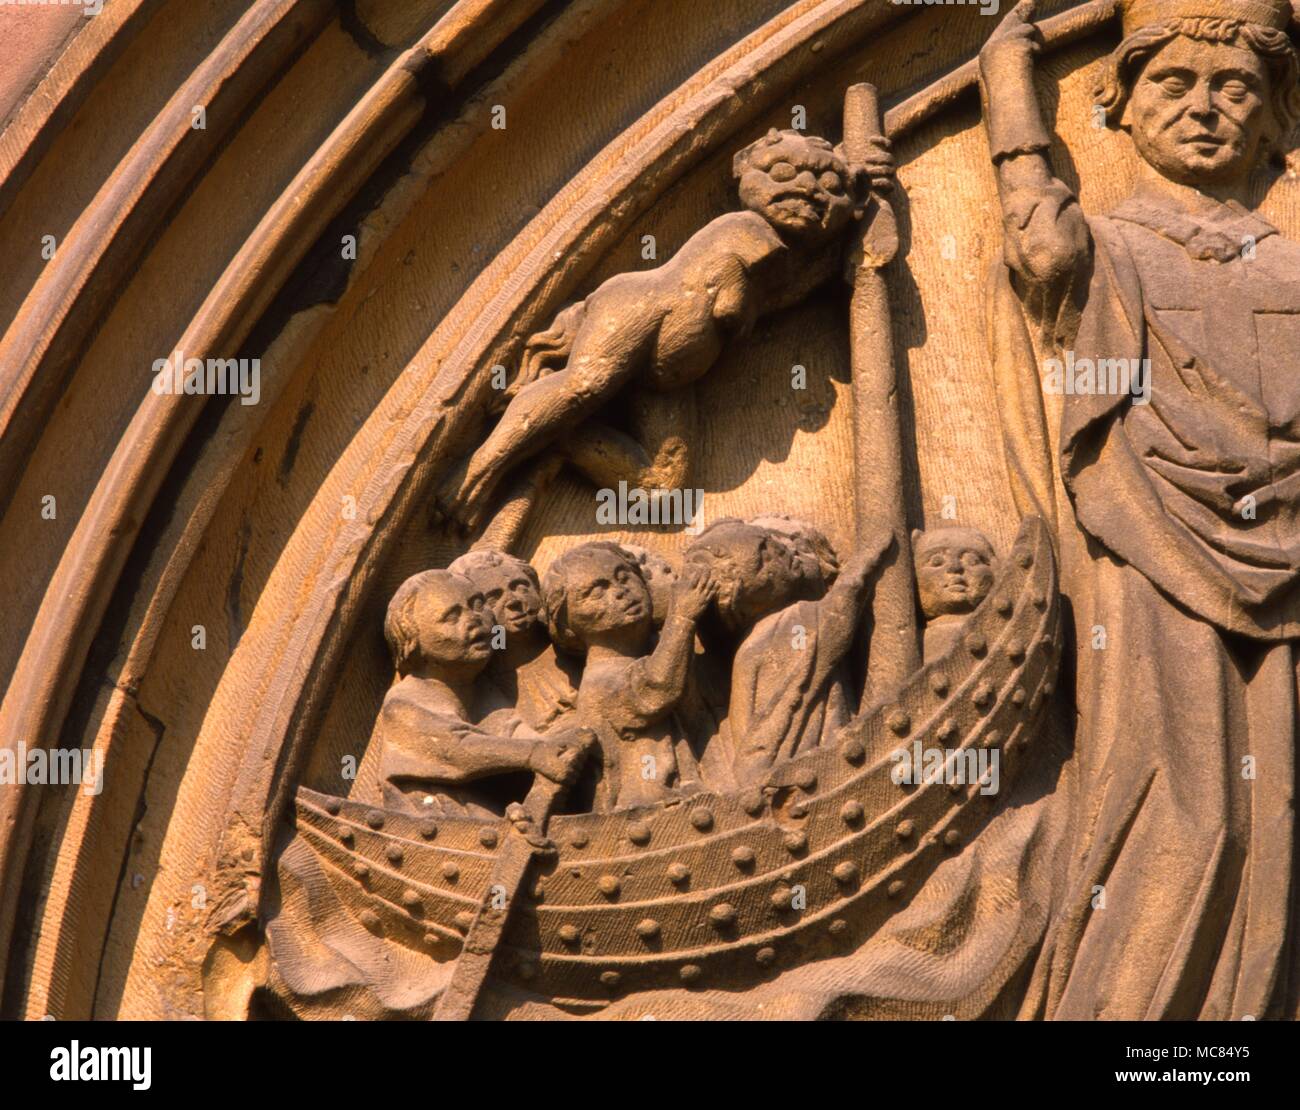 Le démon et de Saint Nicolas de Bari - sculpture relief sur la façade de la cathédrale de Worms [Allemagne], vers 1400. Banque D'Images